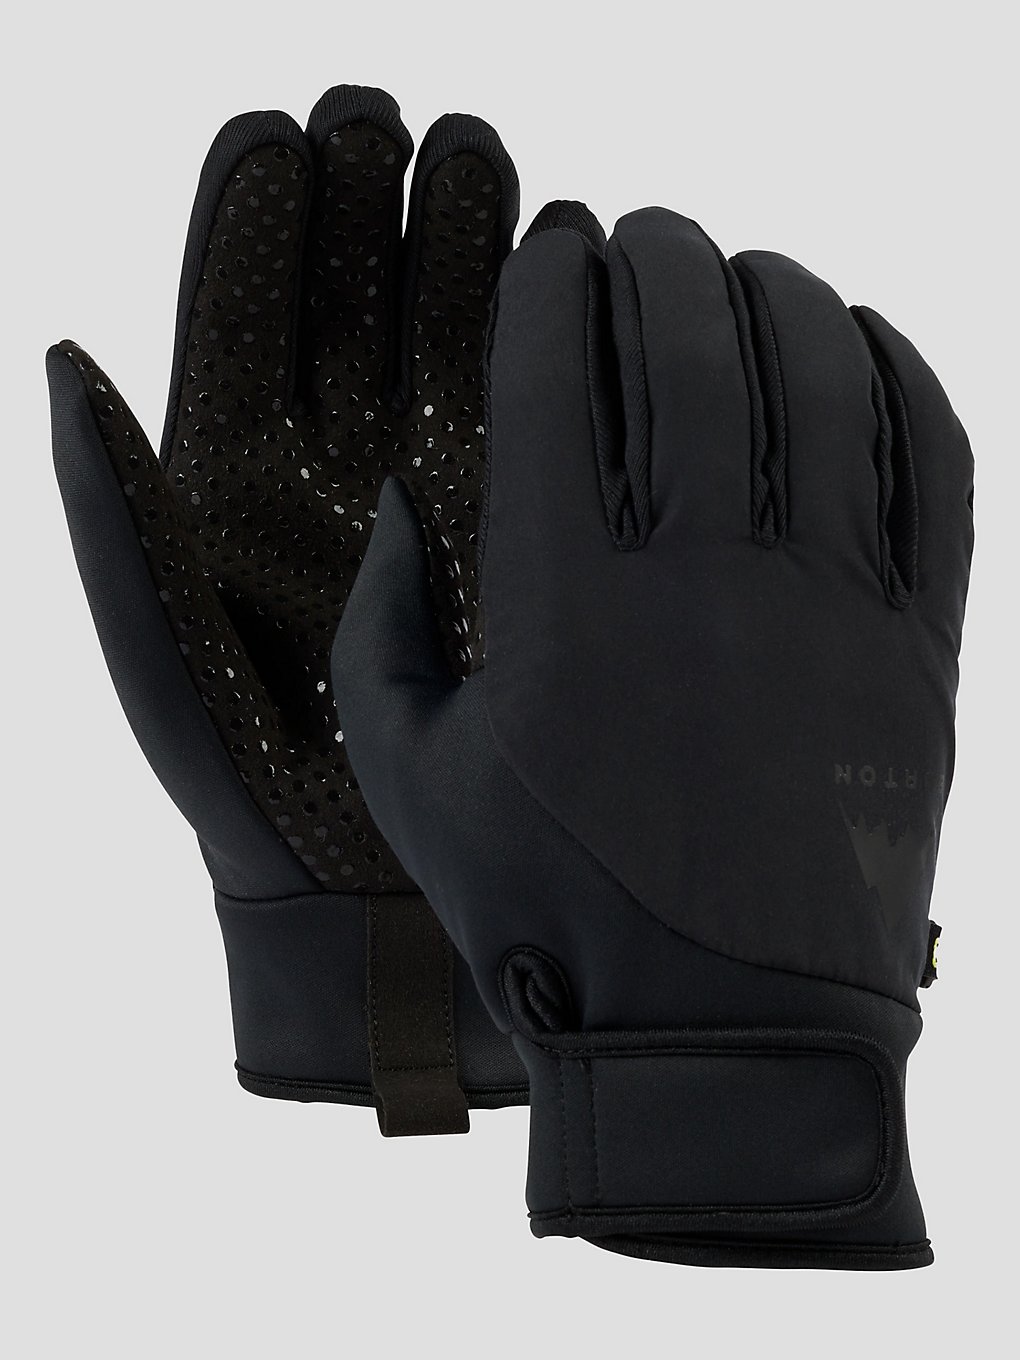 Burton Park Handschuhe true black kaufen